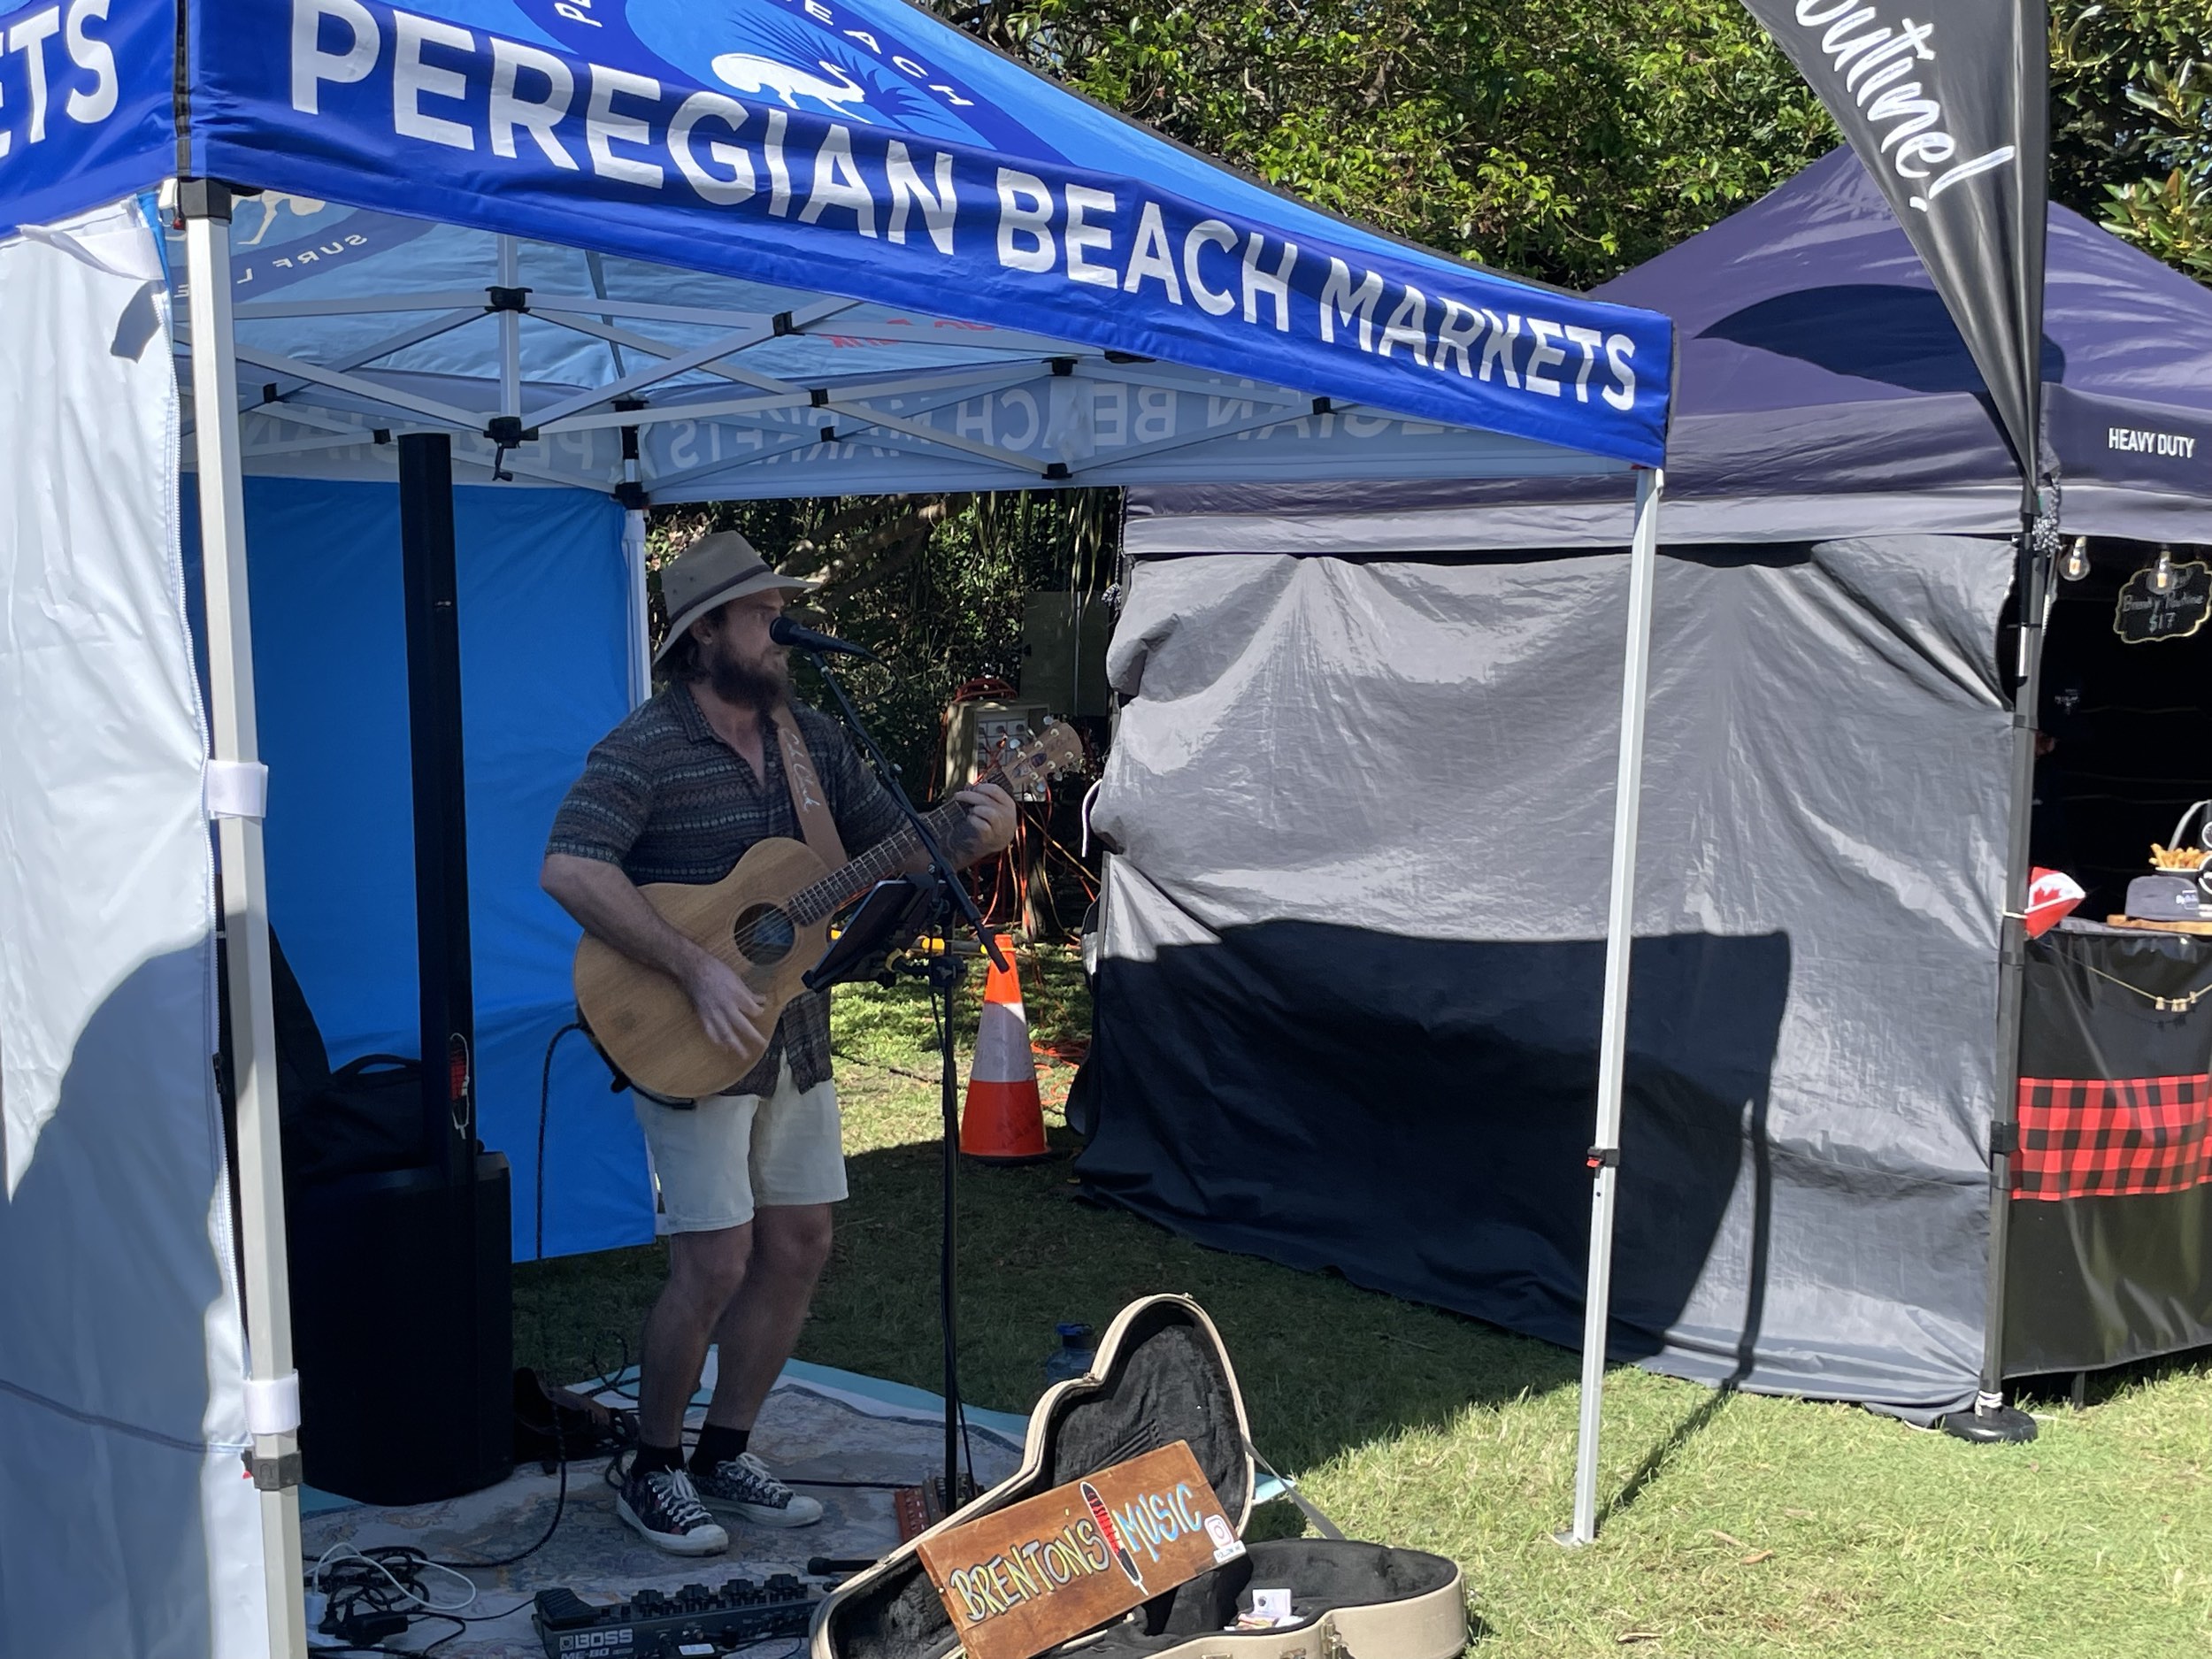 Singer at Peregian Beach Markets